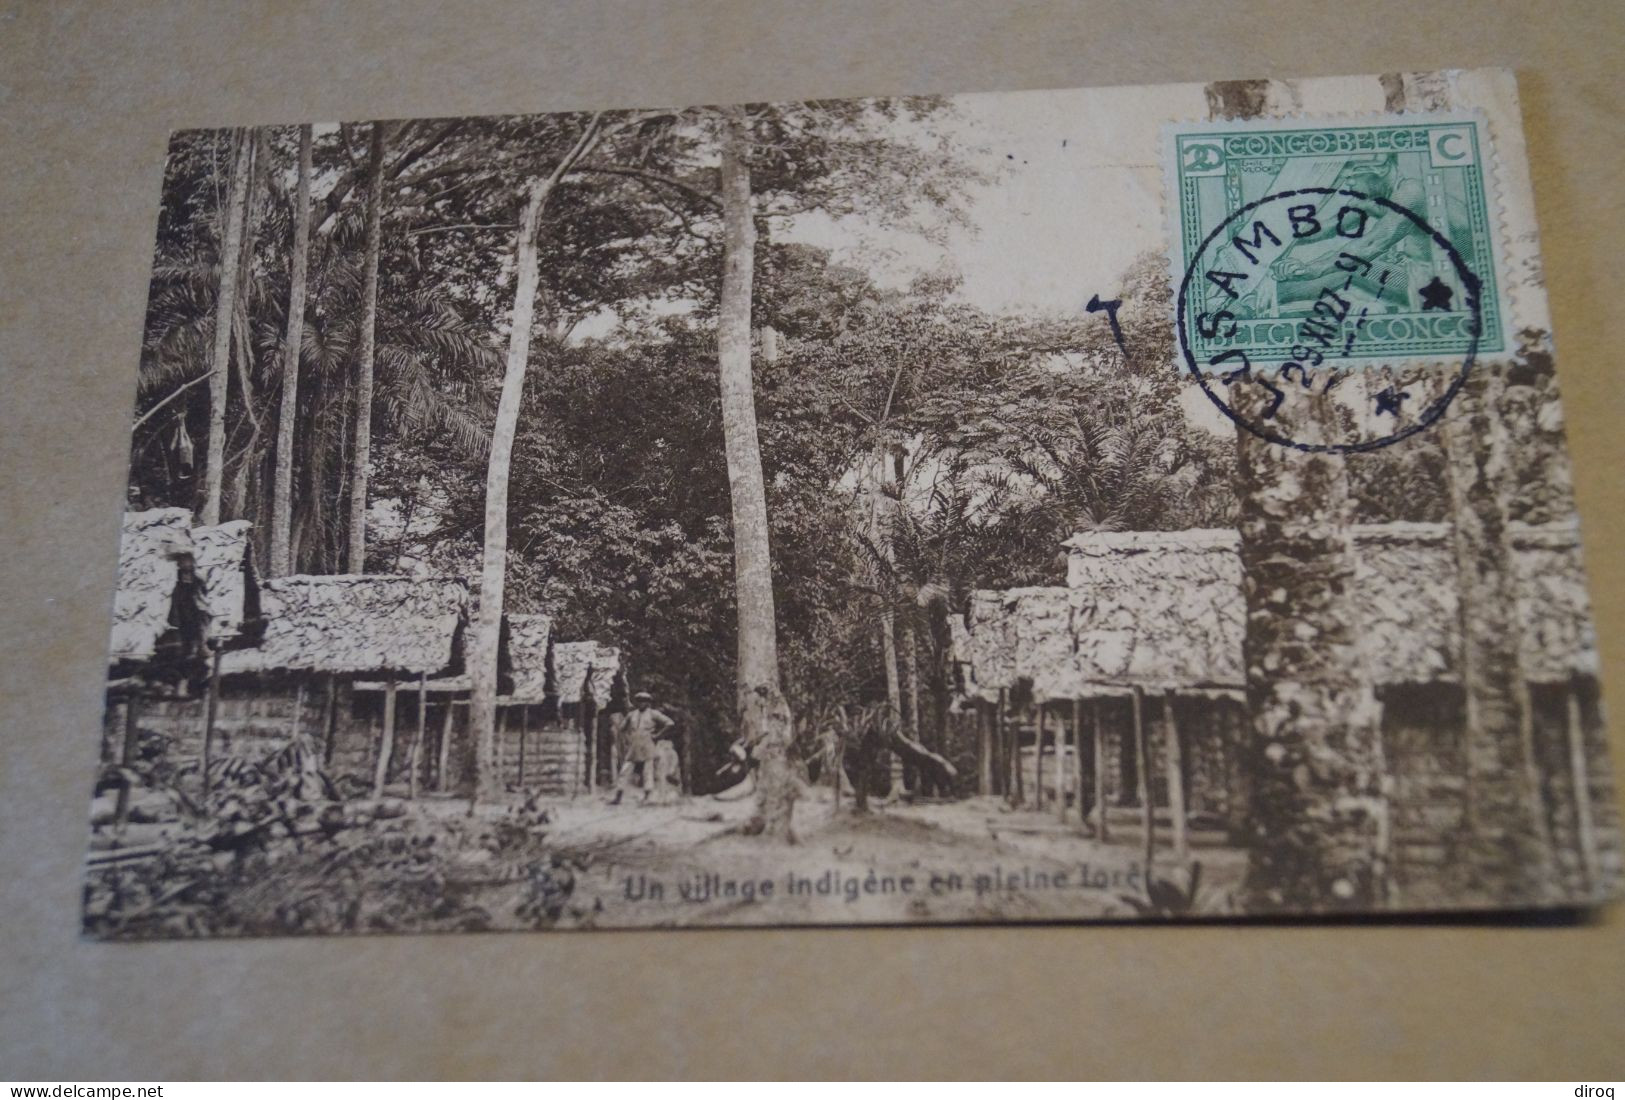 Congo Belge,village Indigène,oblitération De Lusambo 1927,Très Belle Ancienne Carte,à Voyagé,pour Collection - Congo Belge